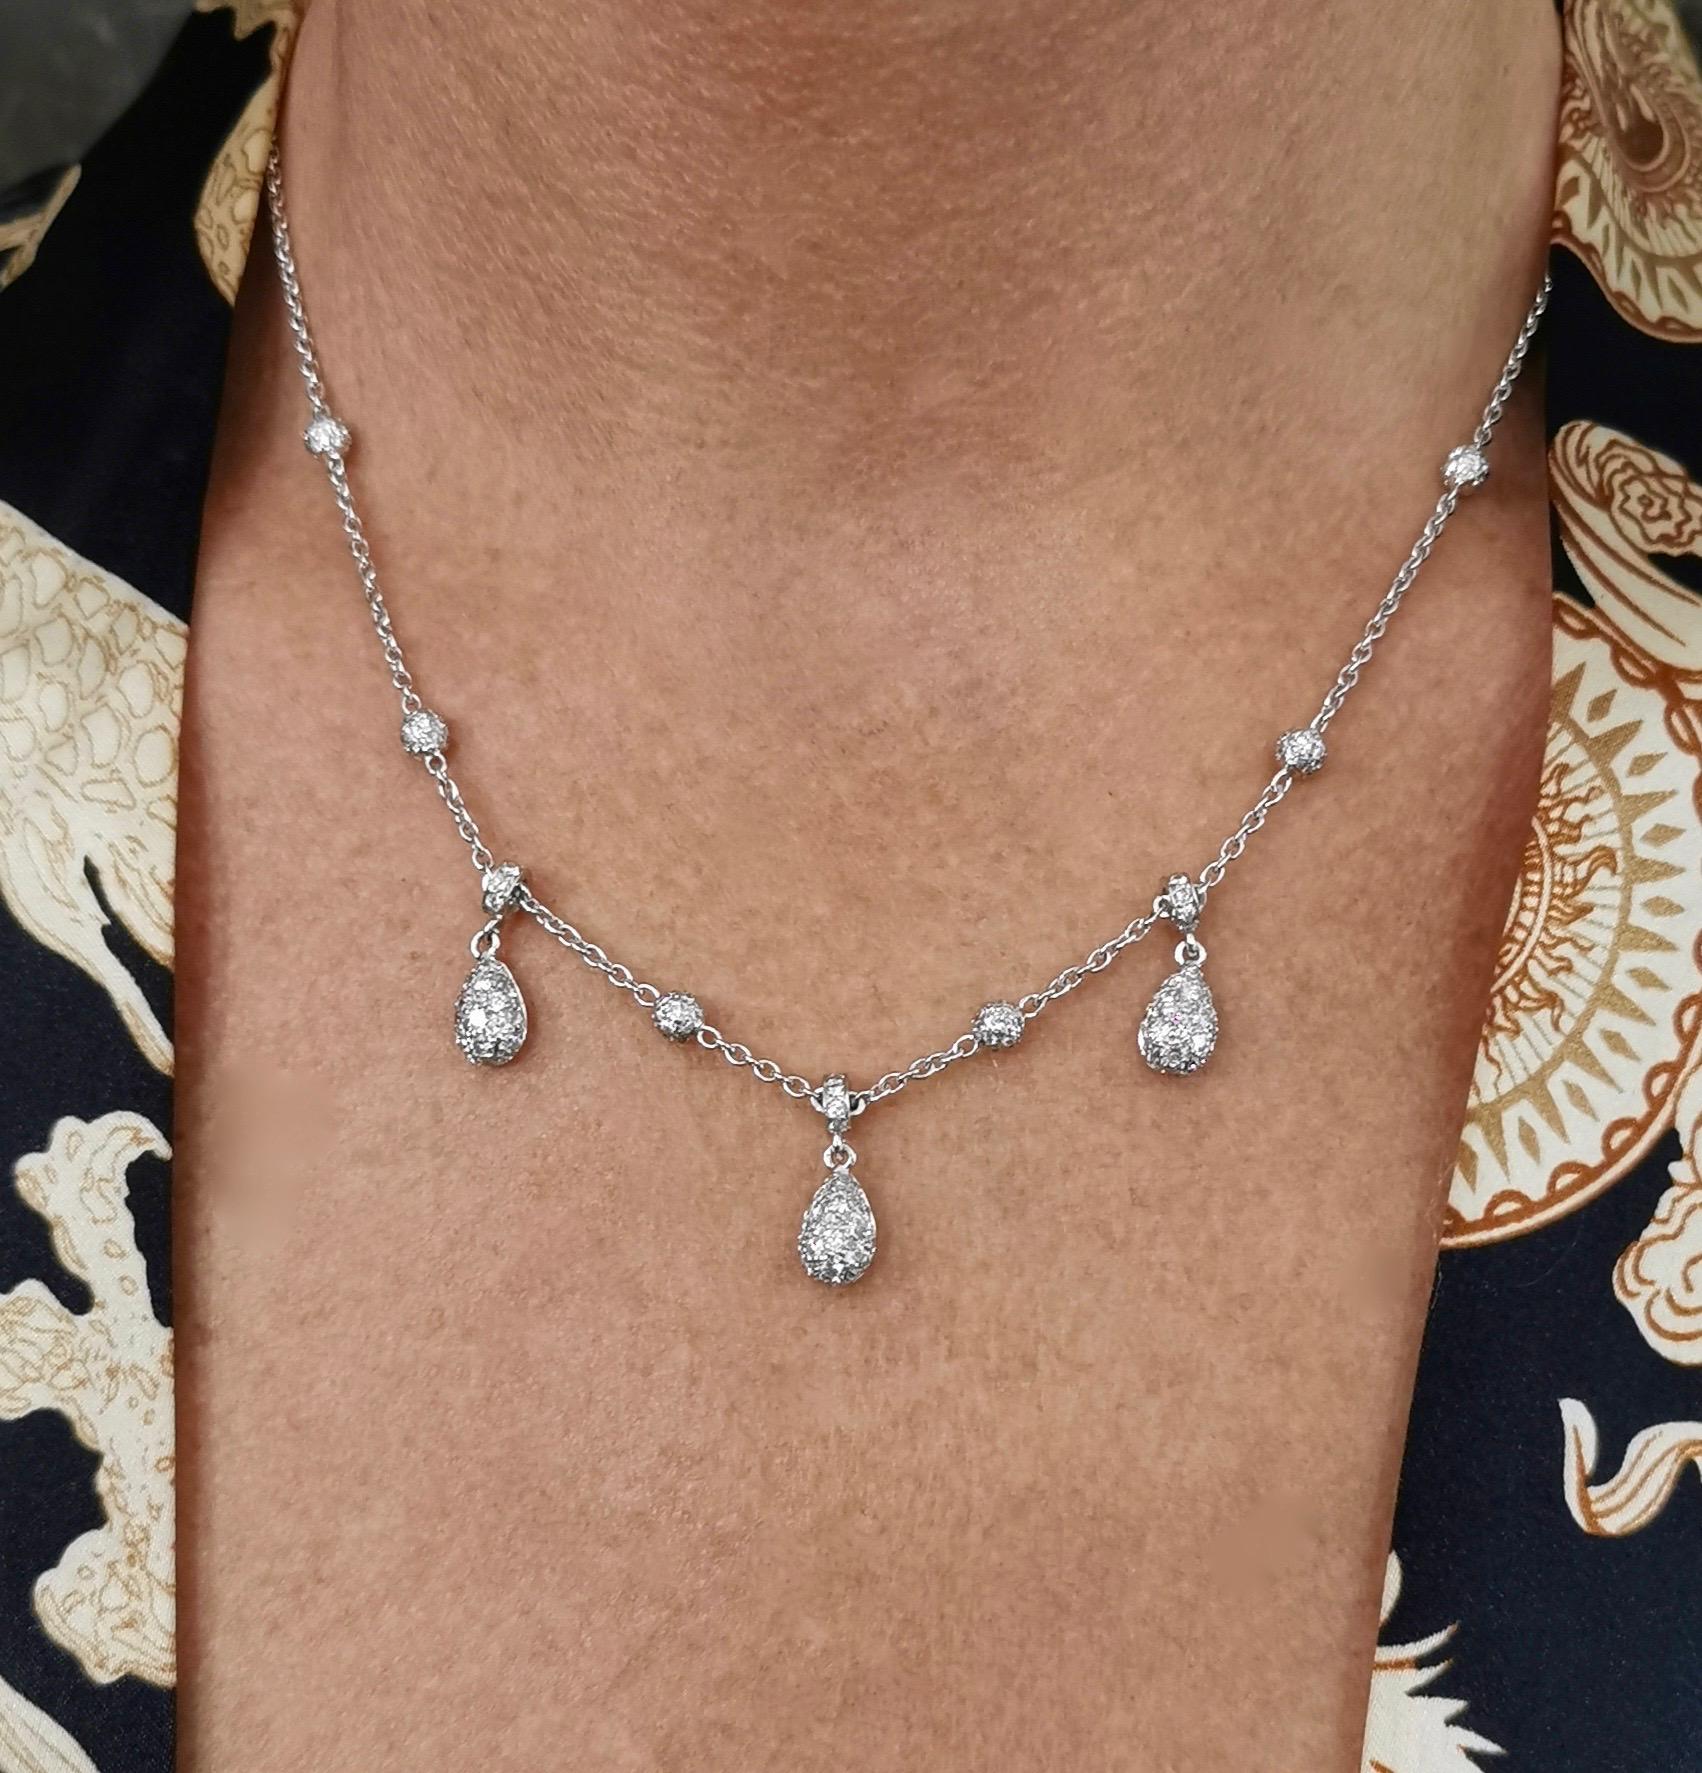 adler necklace